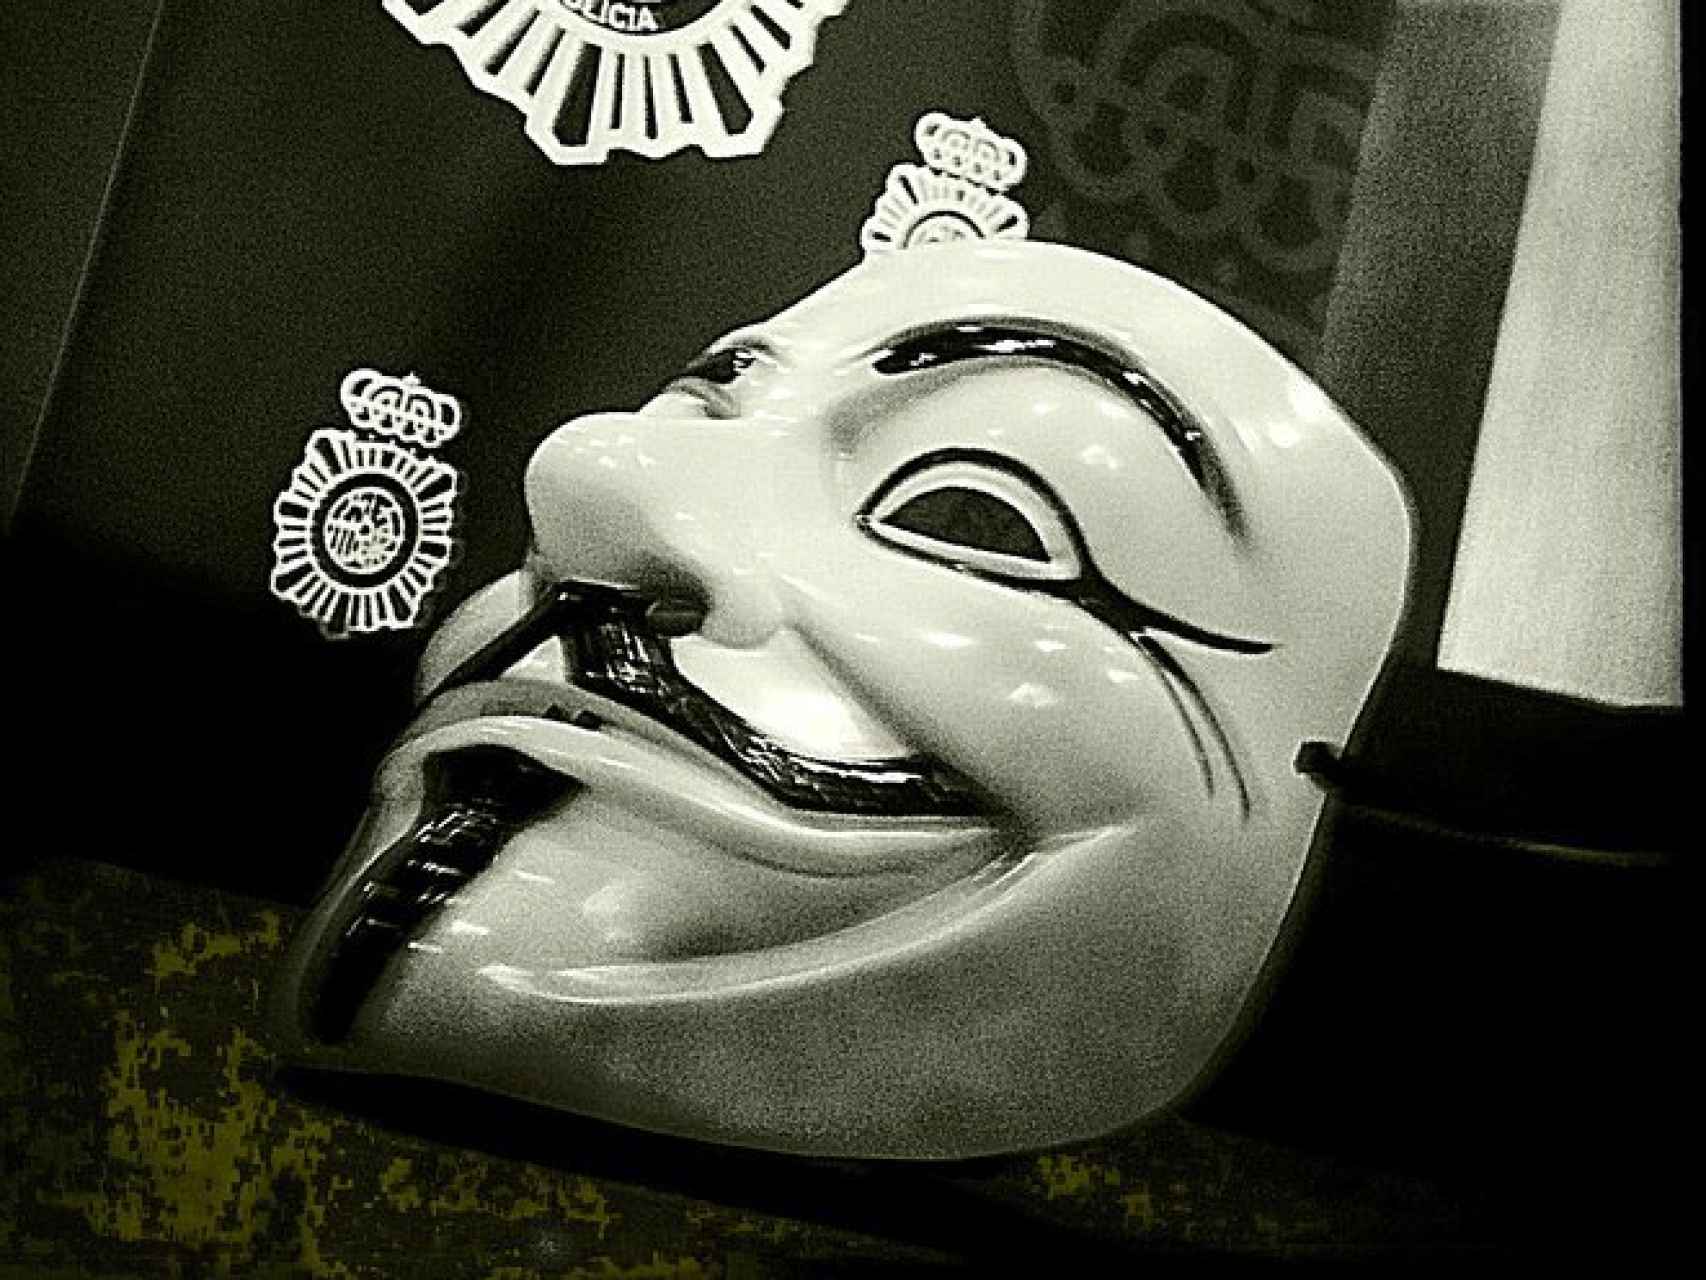 Imagen de una careta de Guy Fawkes, símbolo de Anonymous.